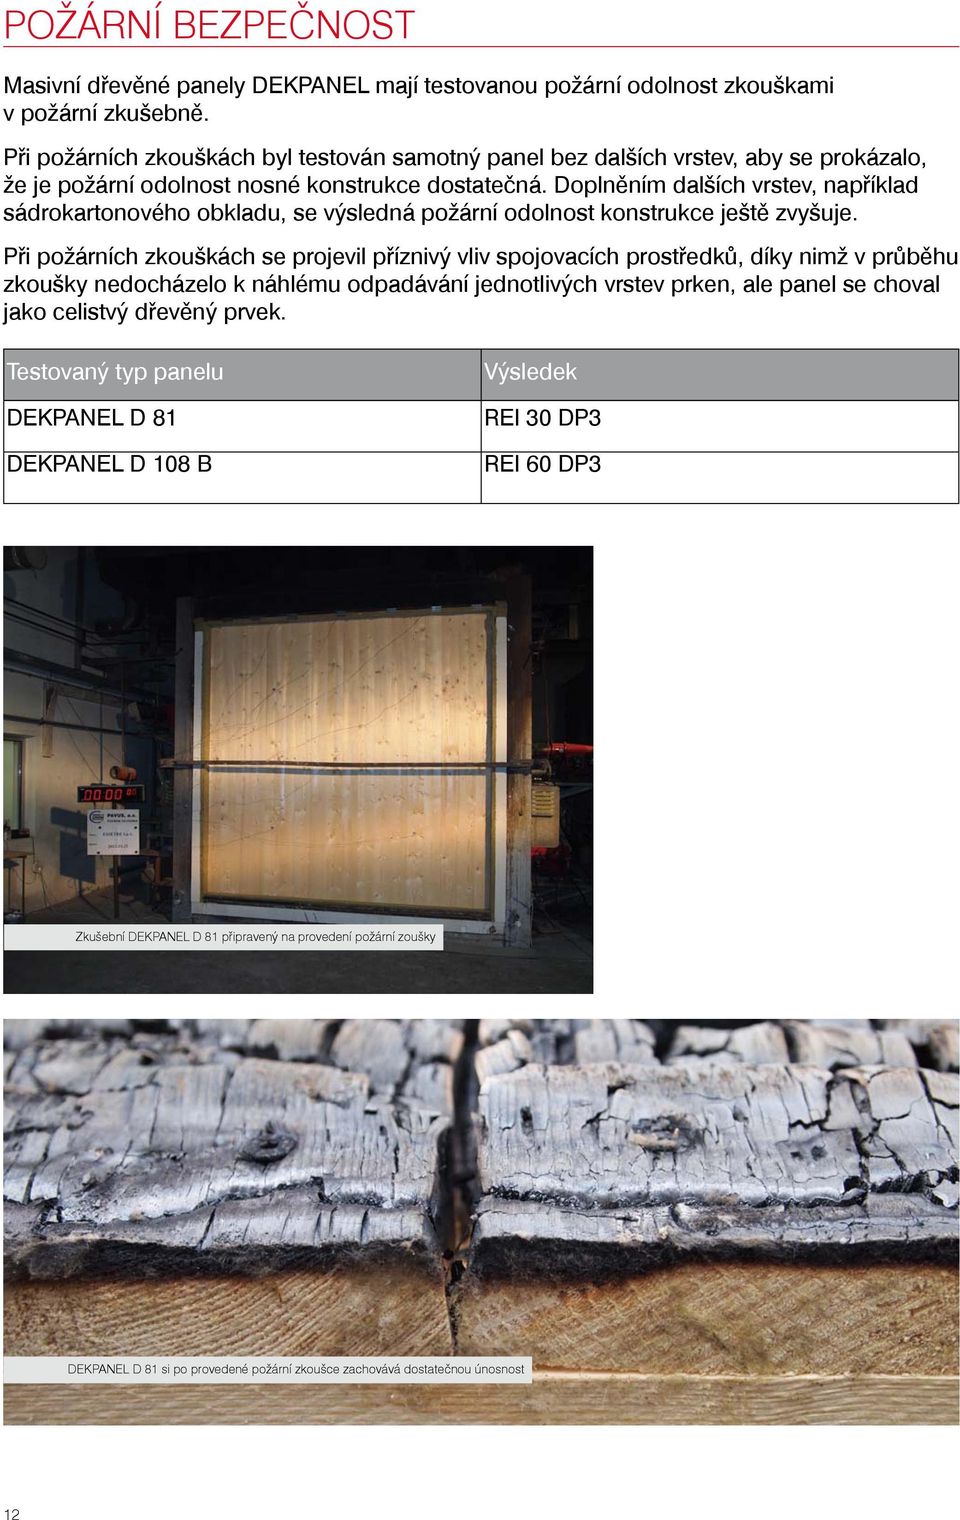 Doplněním dalších vrstev, například sádrokartonového obkladu, se výsledná požární odolnost konstrukce ještě zvyšuje.